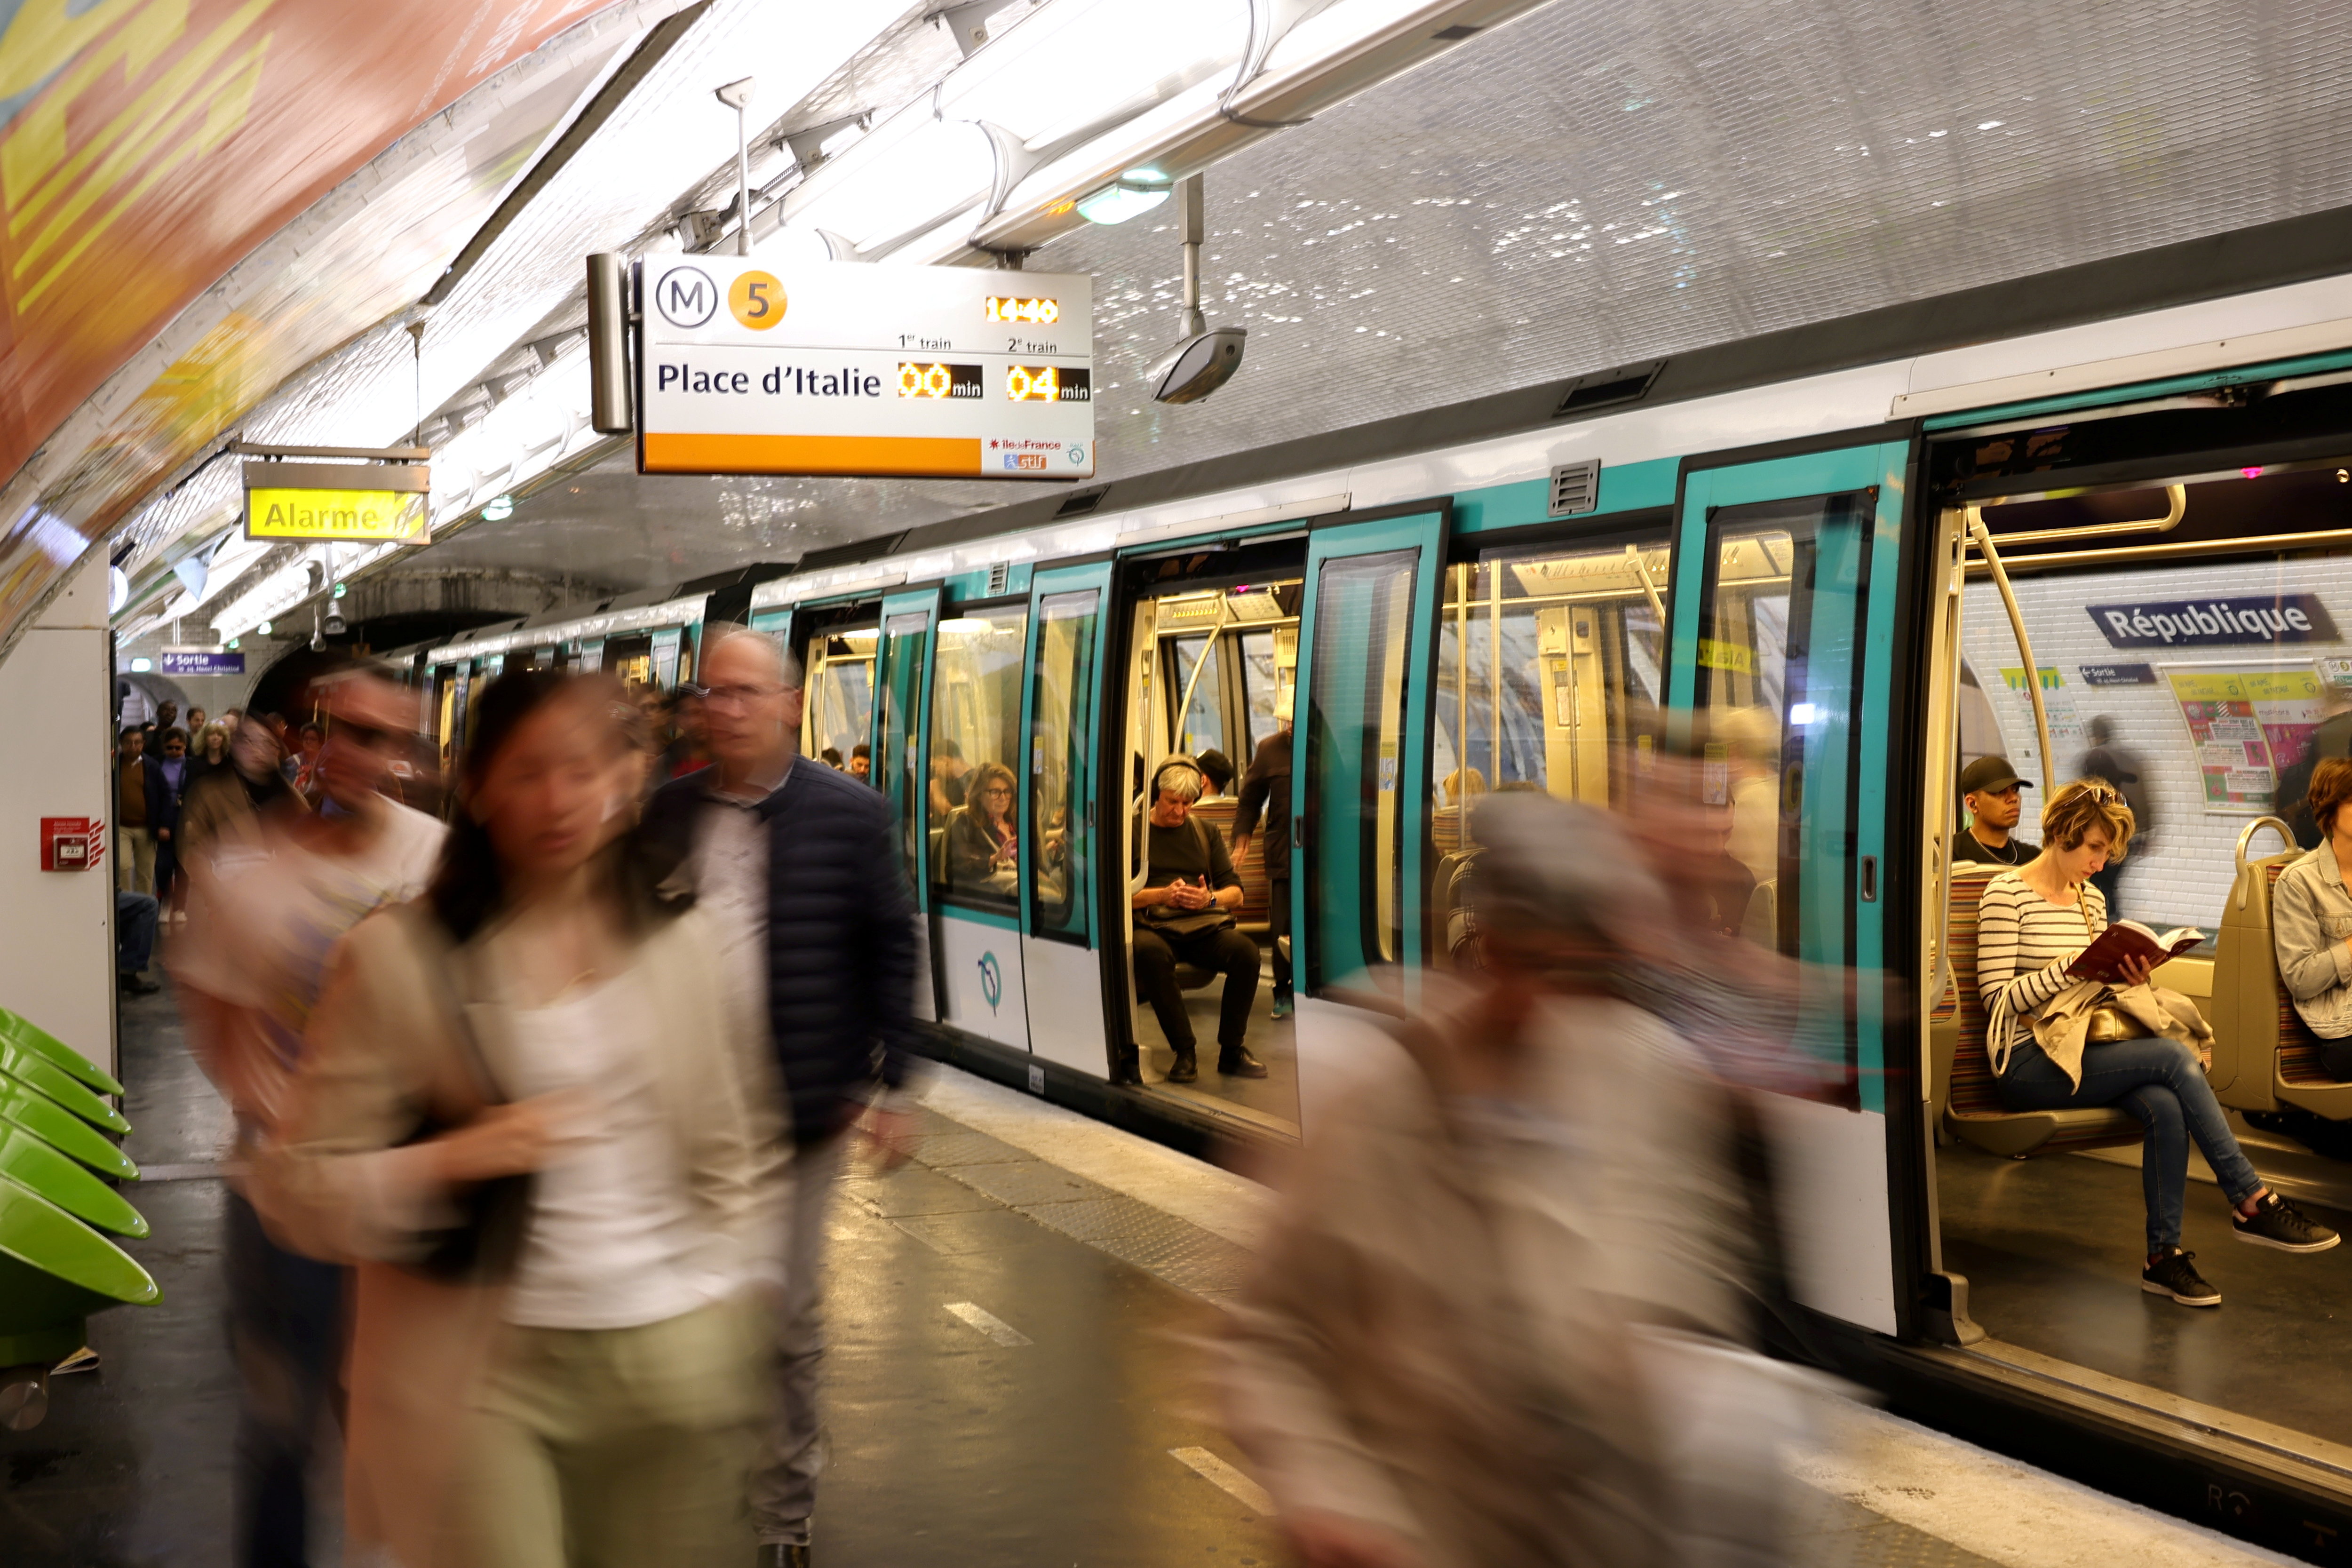 La surpollution est particulièrement forte sur la ligne 5 du métro et le RER A, d'après les enquêteurs de « Vert de rage ». (Illustration) LP/Olivier Arandel